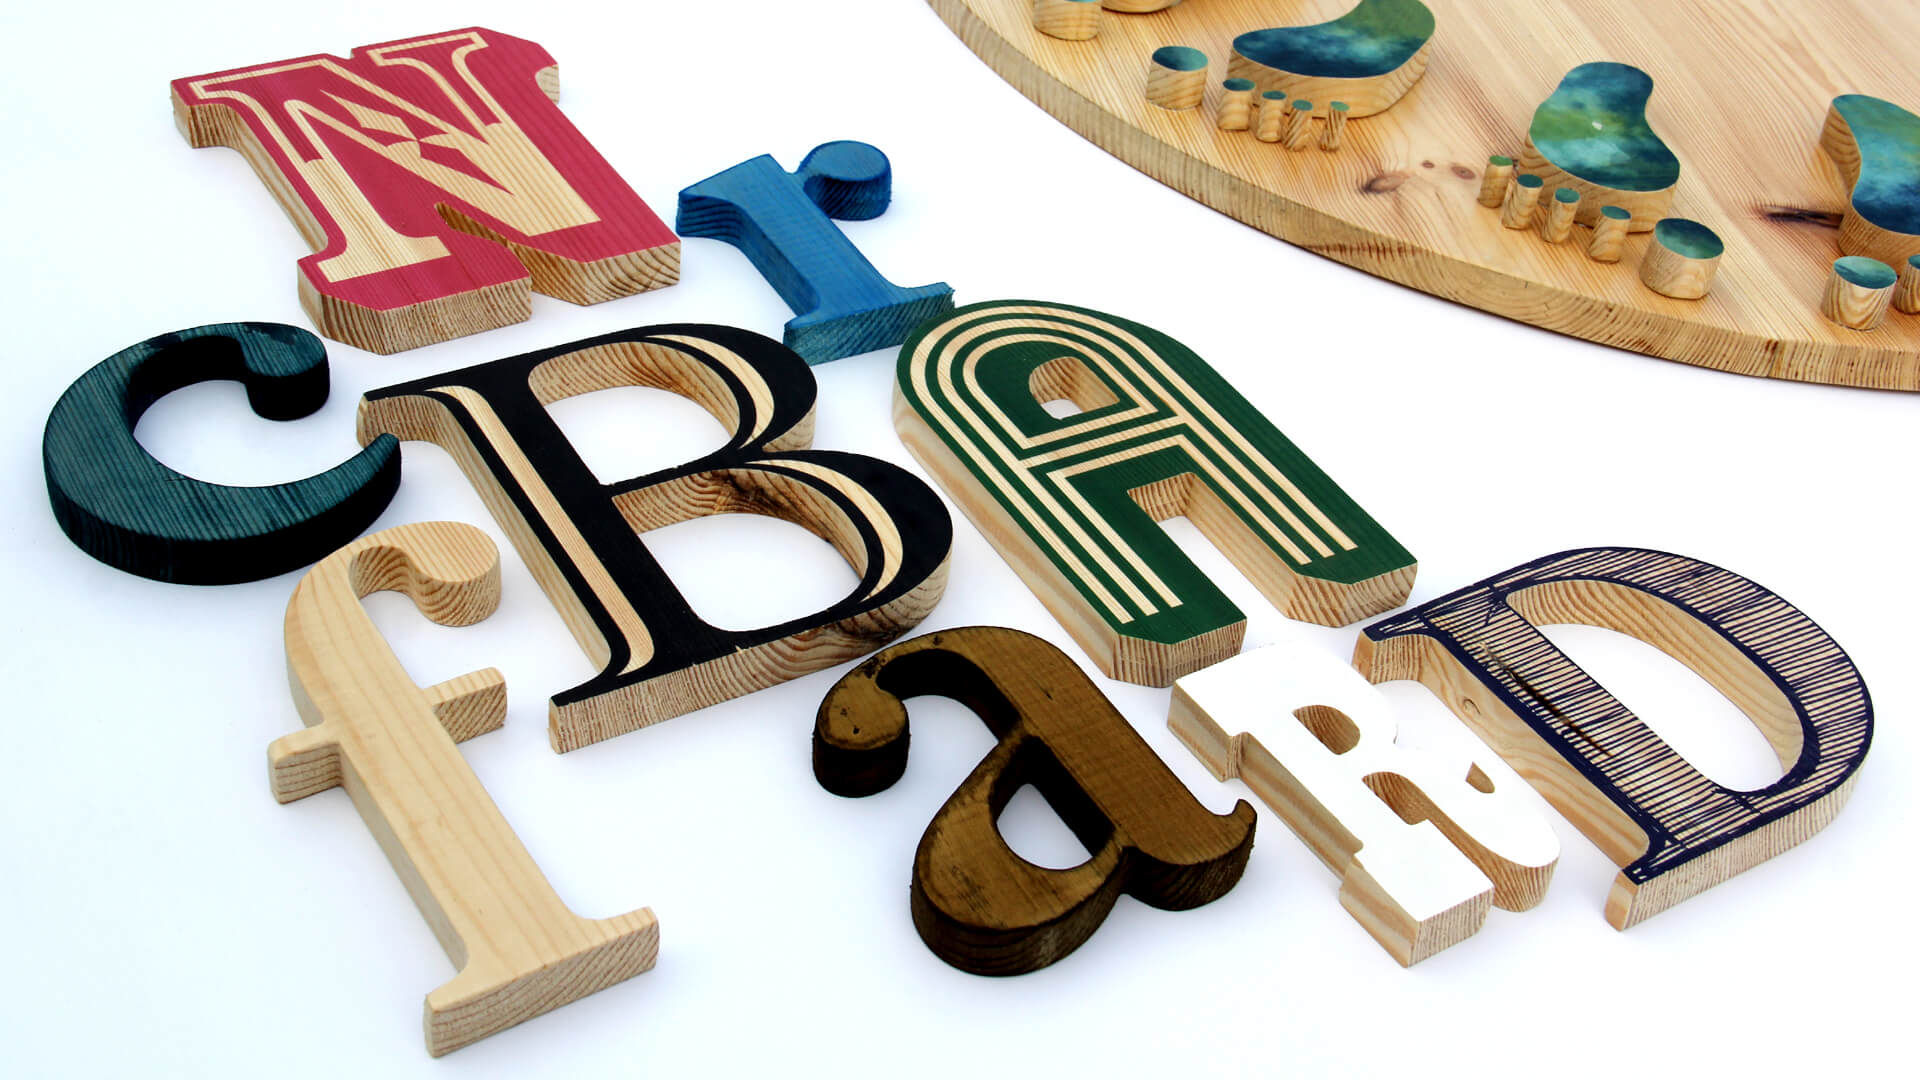 lettere di legno - lettere-decorative-legno-lettere-decorative-legno-colorate-lettere-da-legno